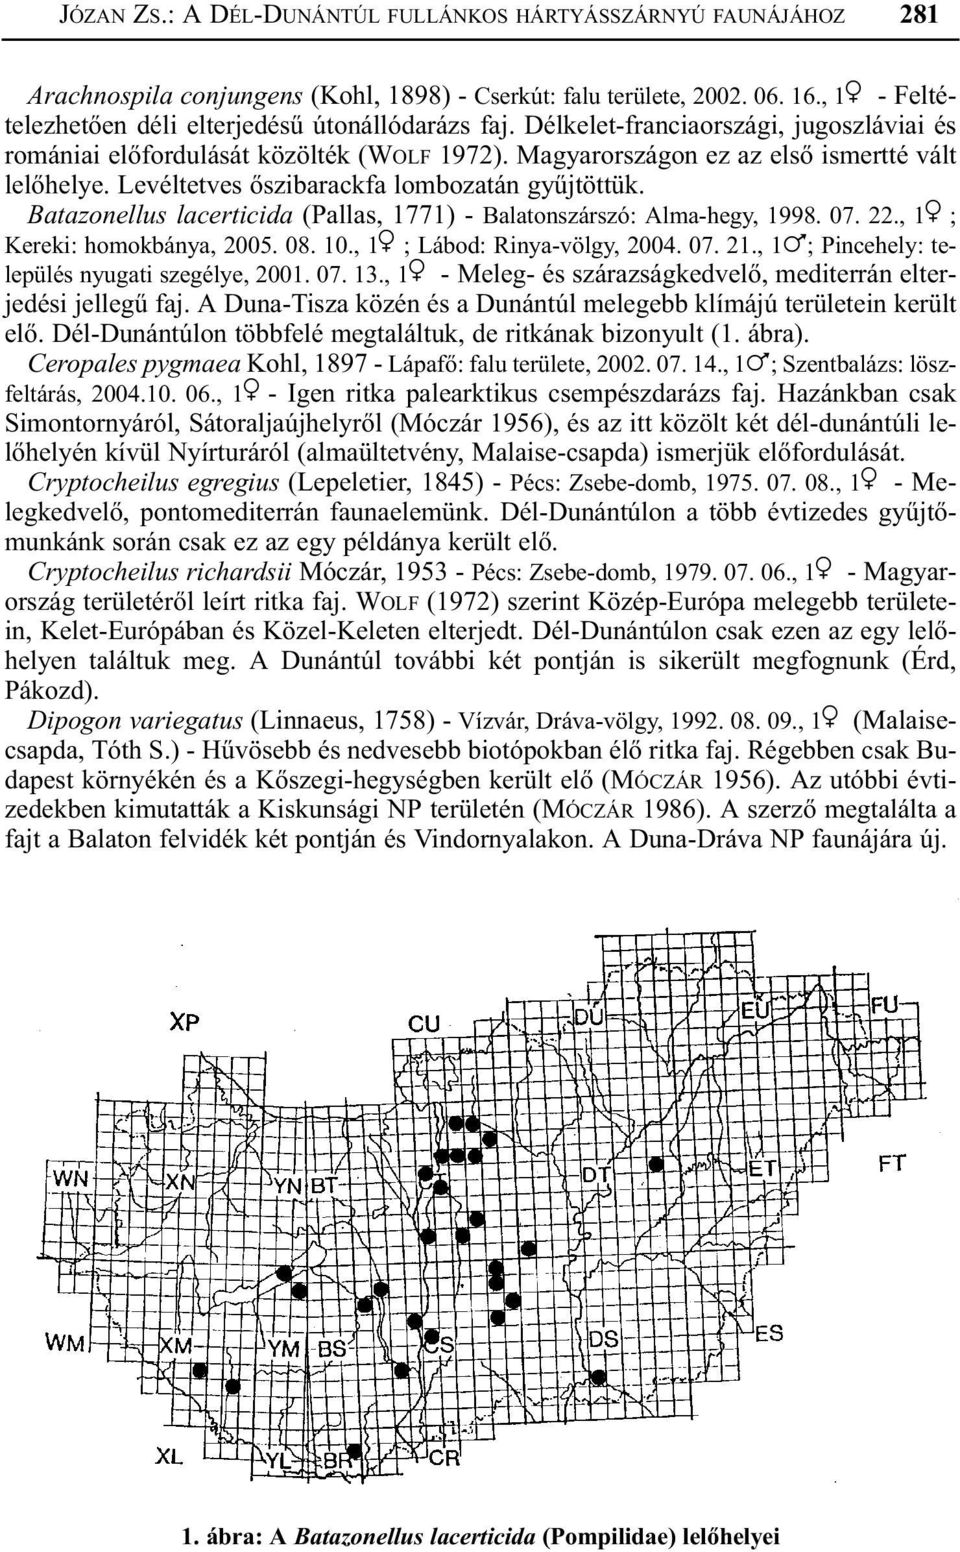 Levéltetves õszibarackfa lombozatán gyûjtöttük. Batazonellus lacerticida (Pallas, 1771) - Balatonszárszó: Alma-hegy, 1998. 07. 22., 1 ; Kereki: homokbánya, 2005. 08. 10., 1 ; Lábod: Rinya-völgy, 2004.